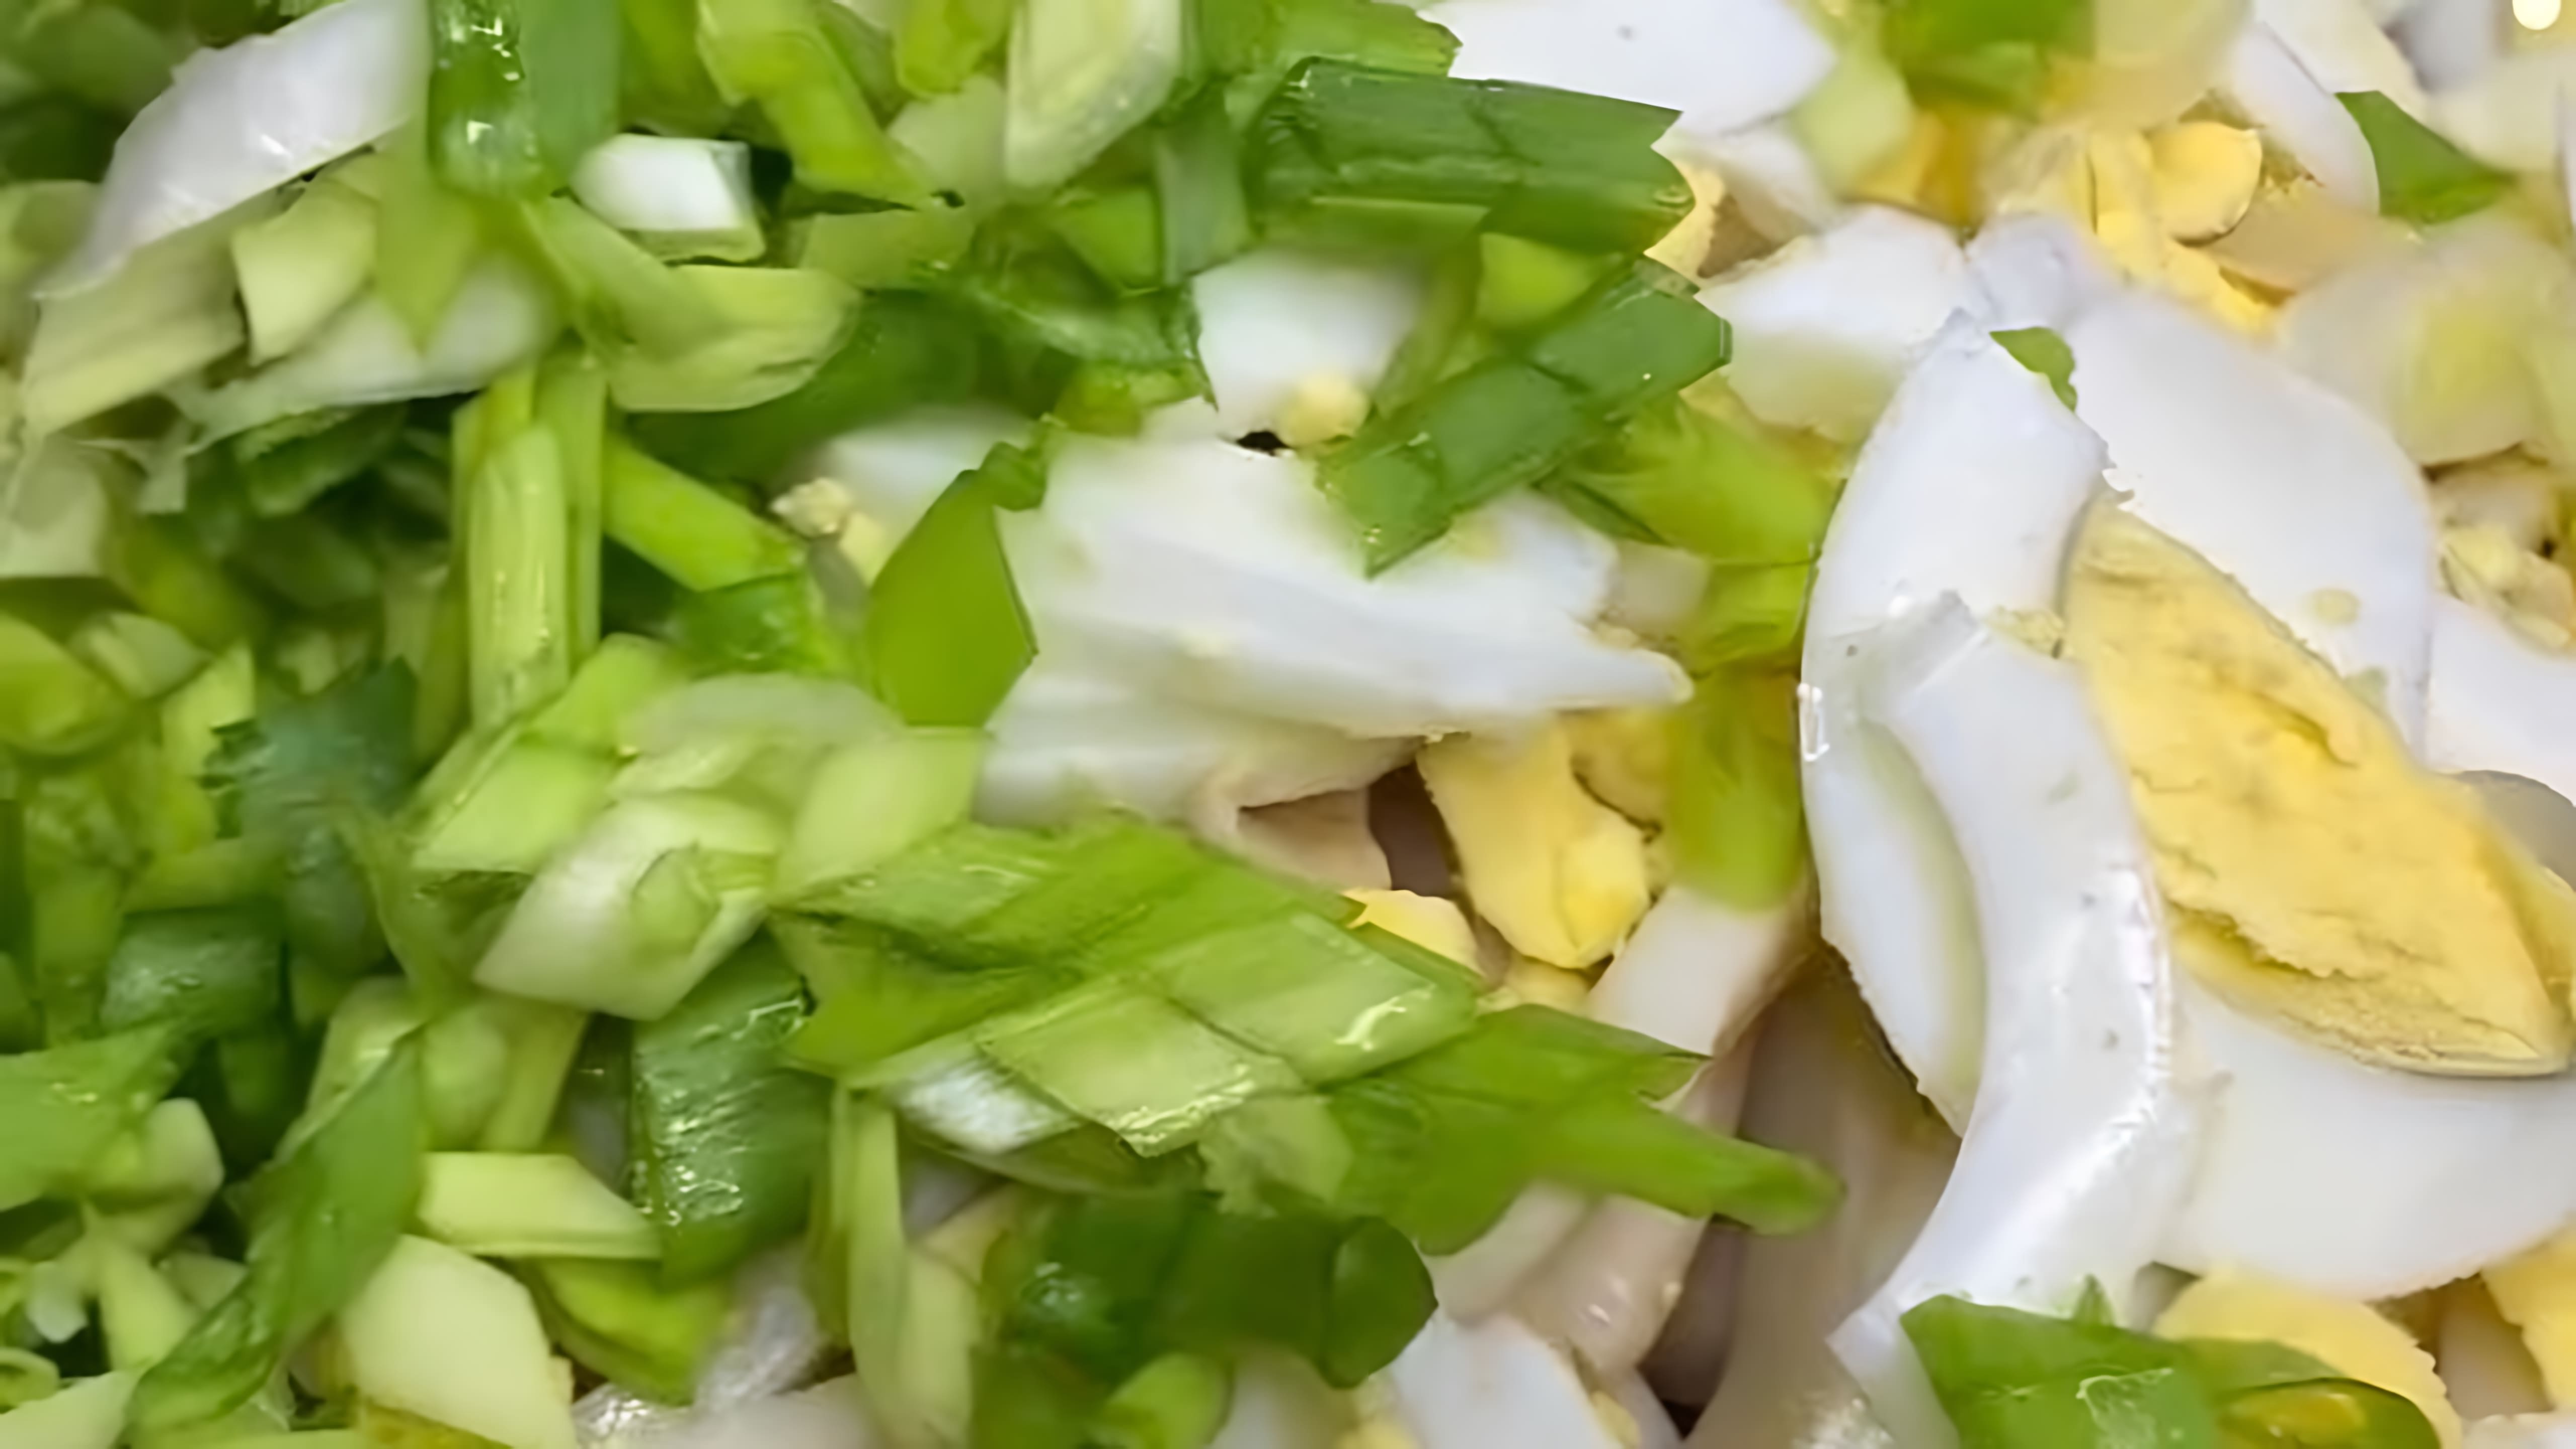 Самый вкусный ПП салат с кальмарами - это видео-ролик, который демонстрирует процесс приготовления полезного и вкусного блюда из кальмаров